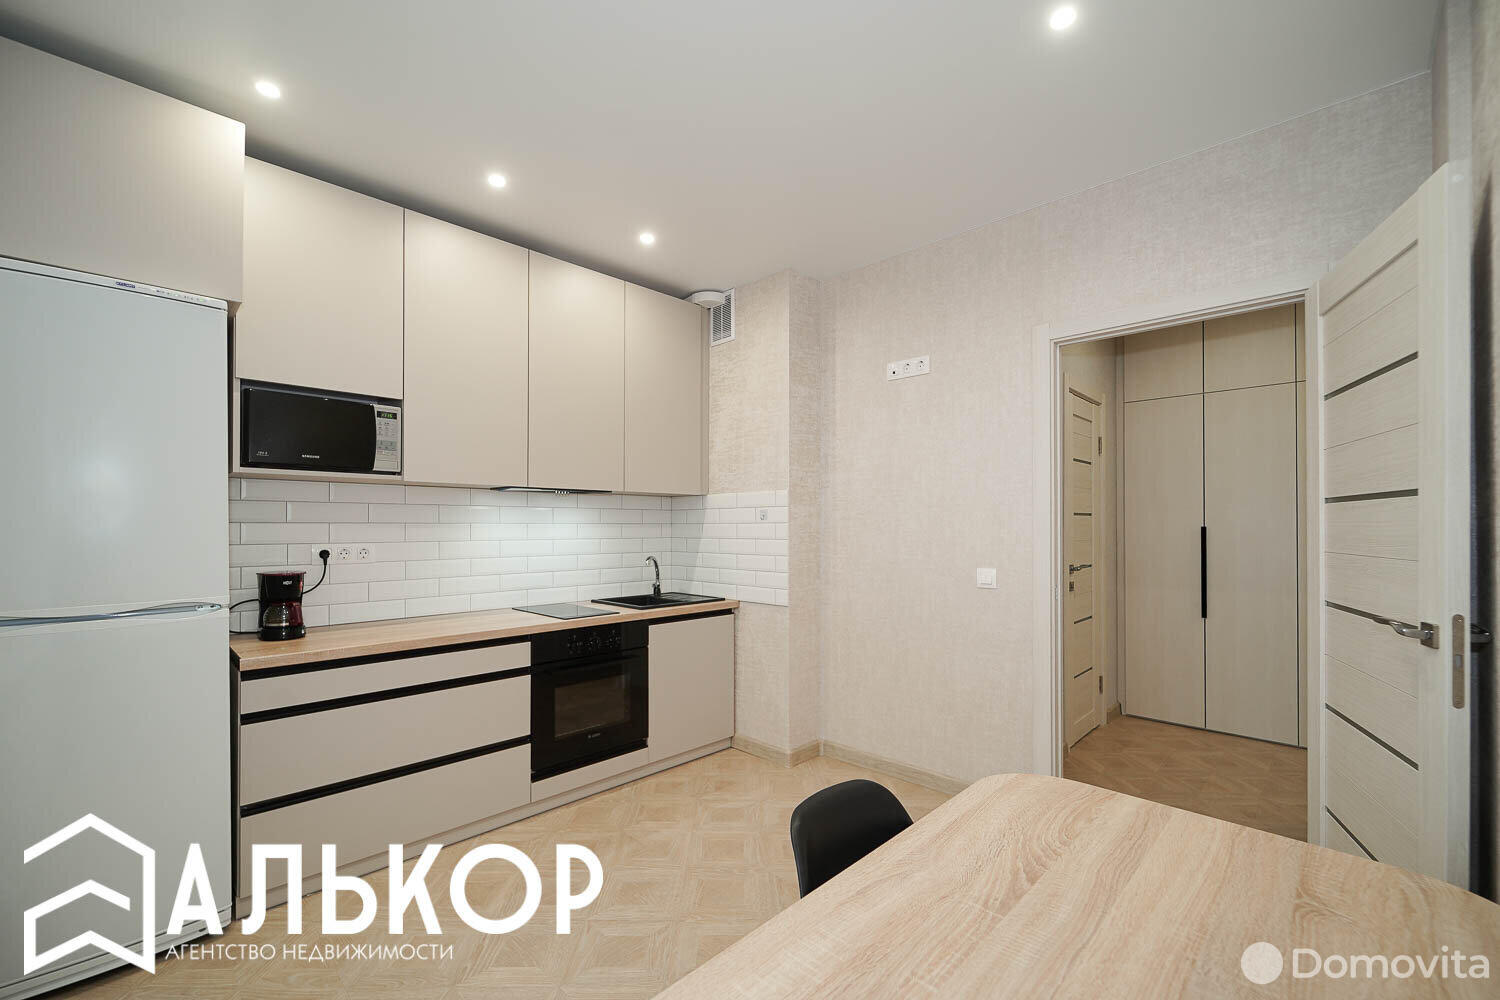 Стоимость продажи квартиры, Минск, ул. Притыцкого, д. 113